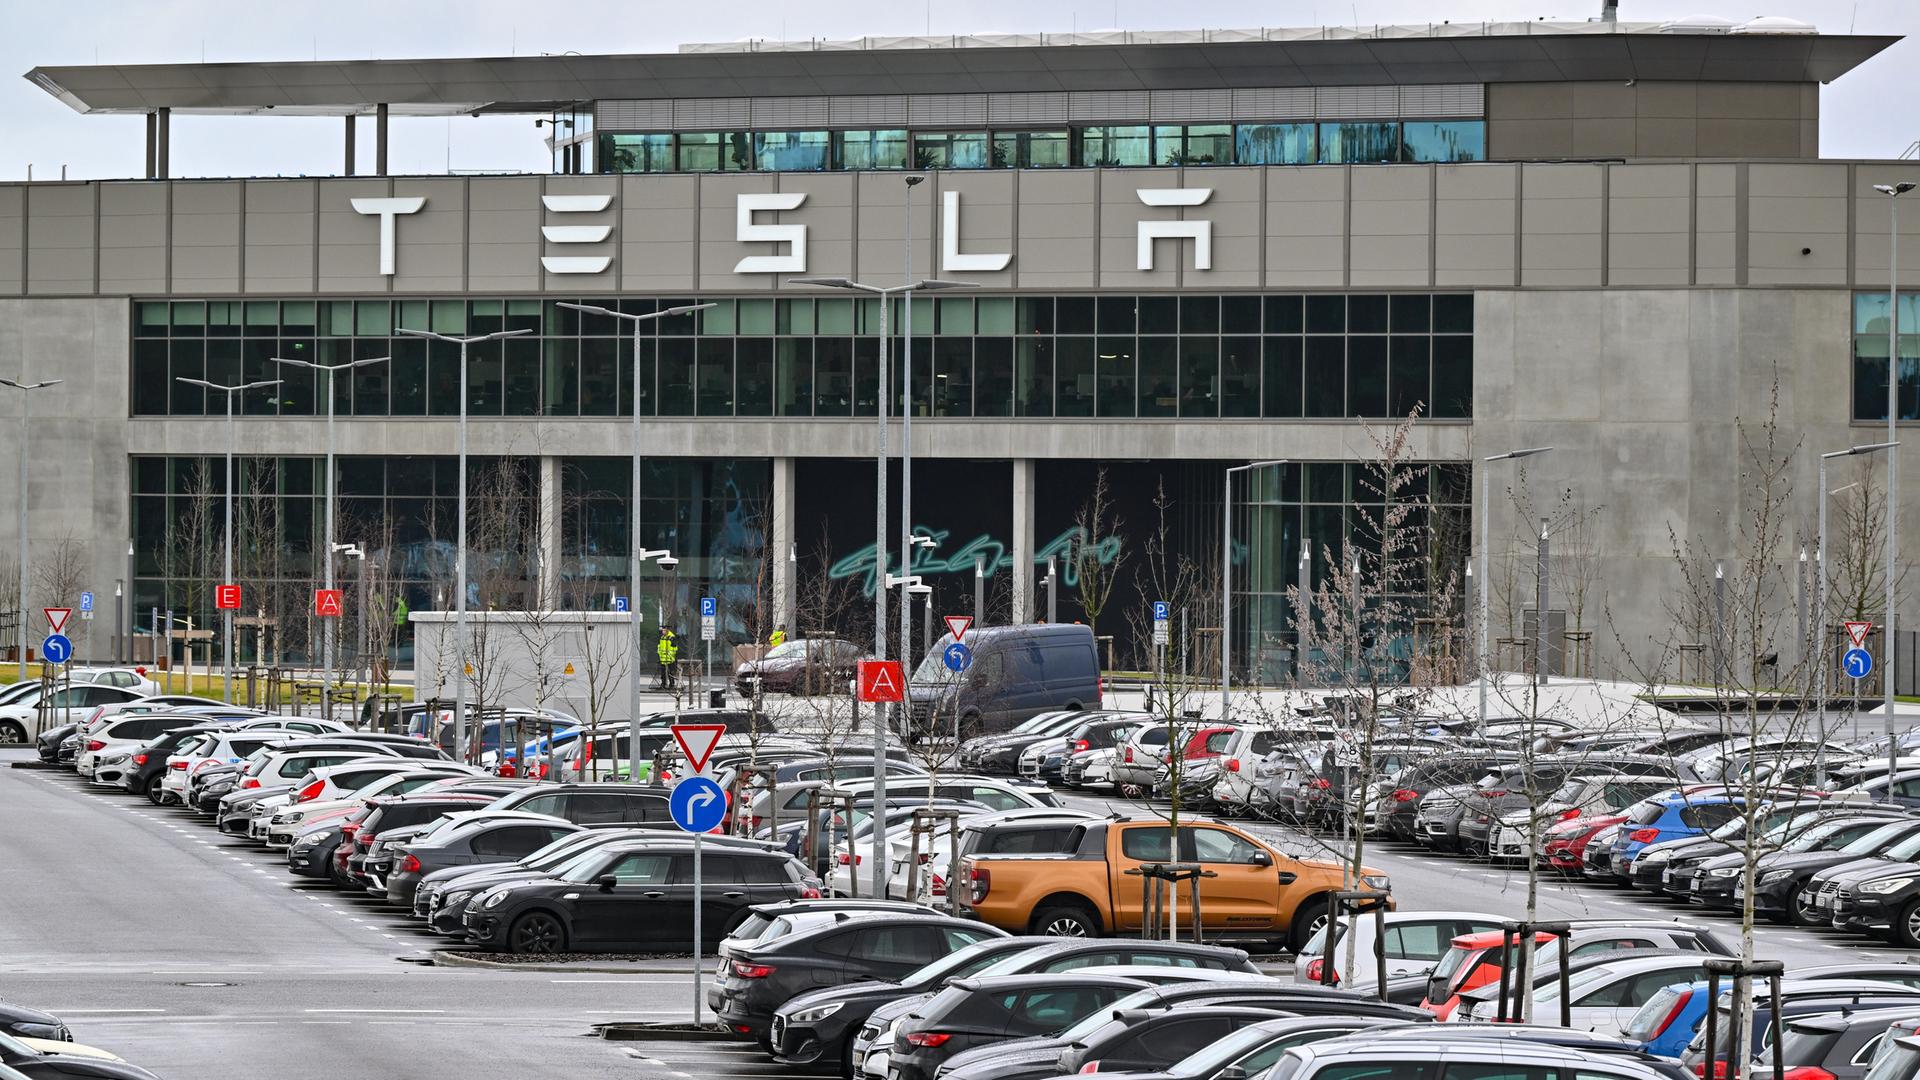 Vor einem Industriegebäude mit dem Schriftzug "Tesla" stehen zahlreiche Fahrzeuge auf einem Parkplatz.